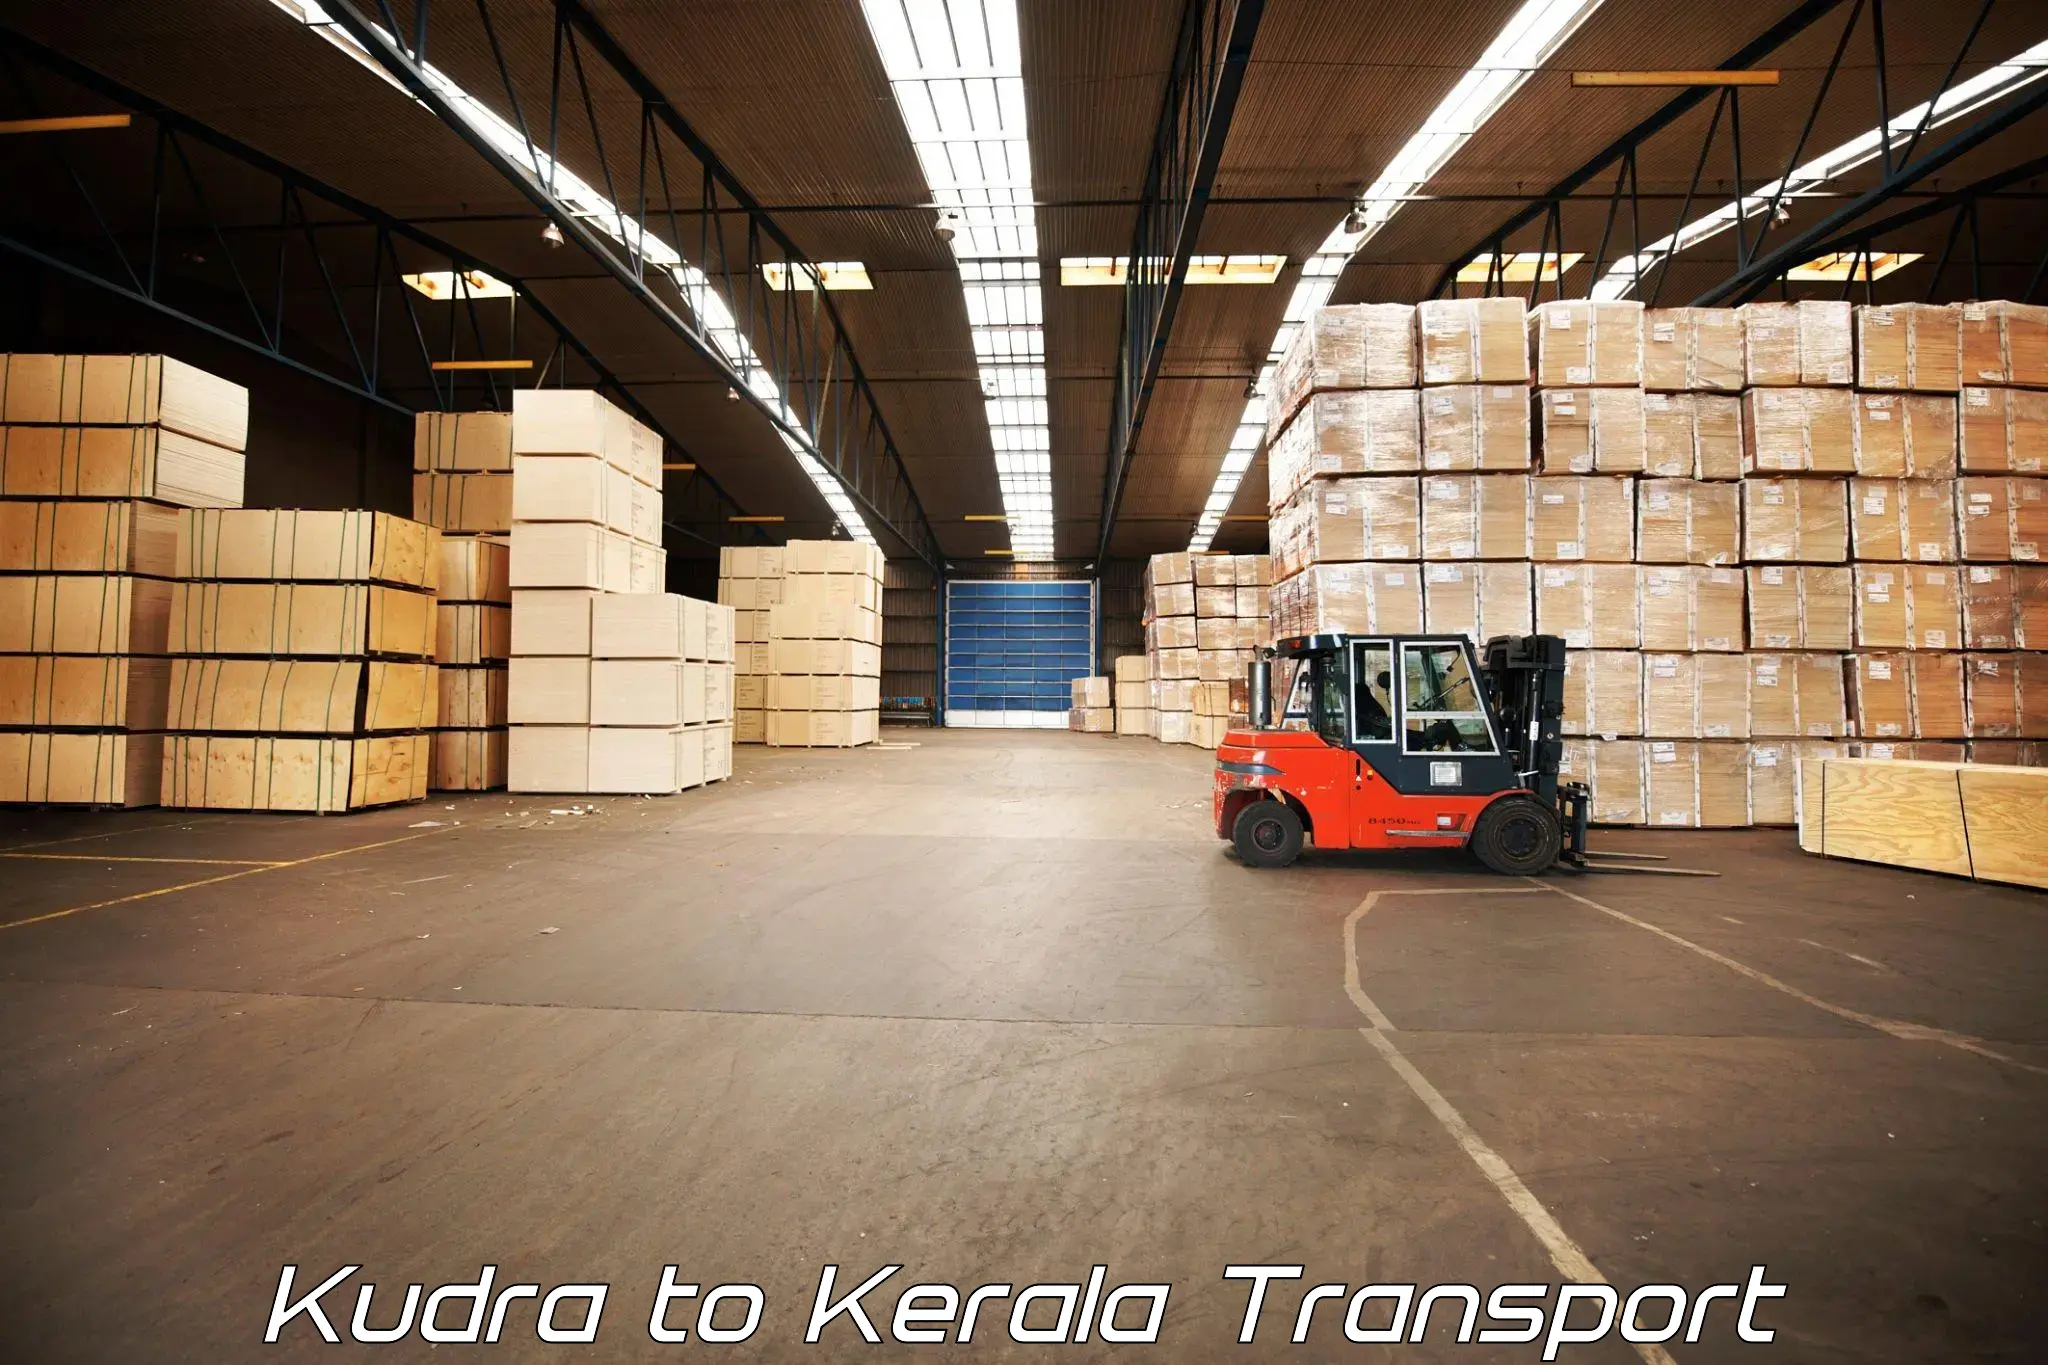 Shipping partner Kudra to Malappuram